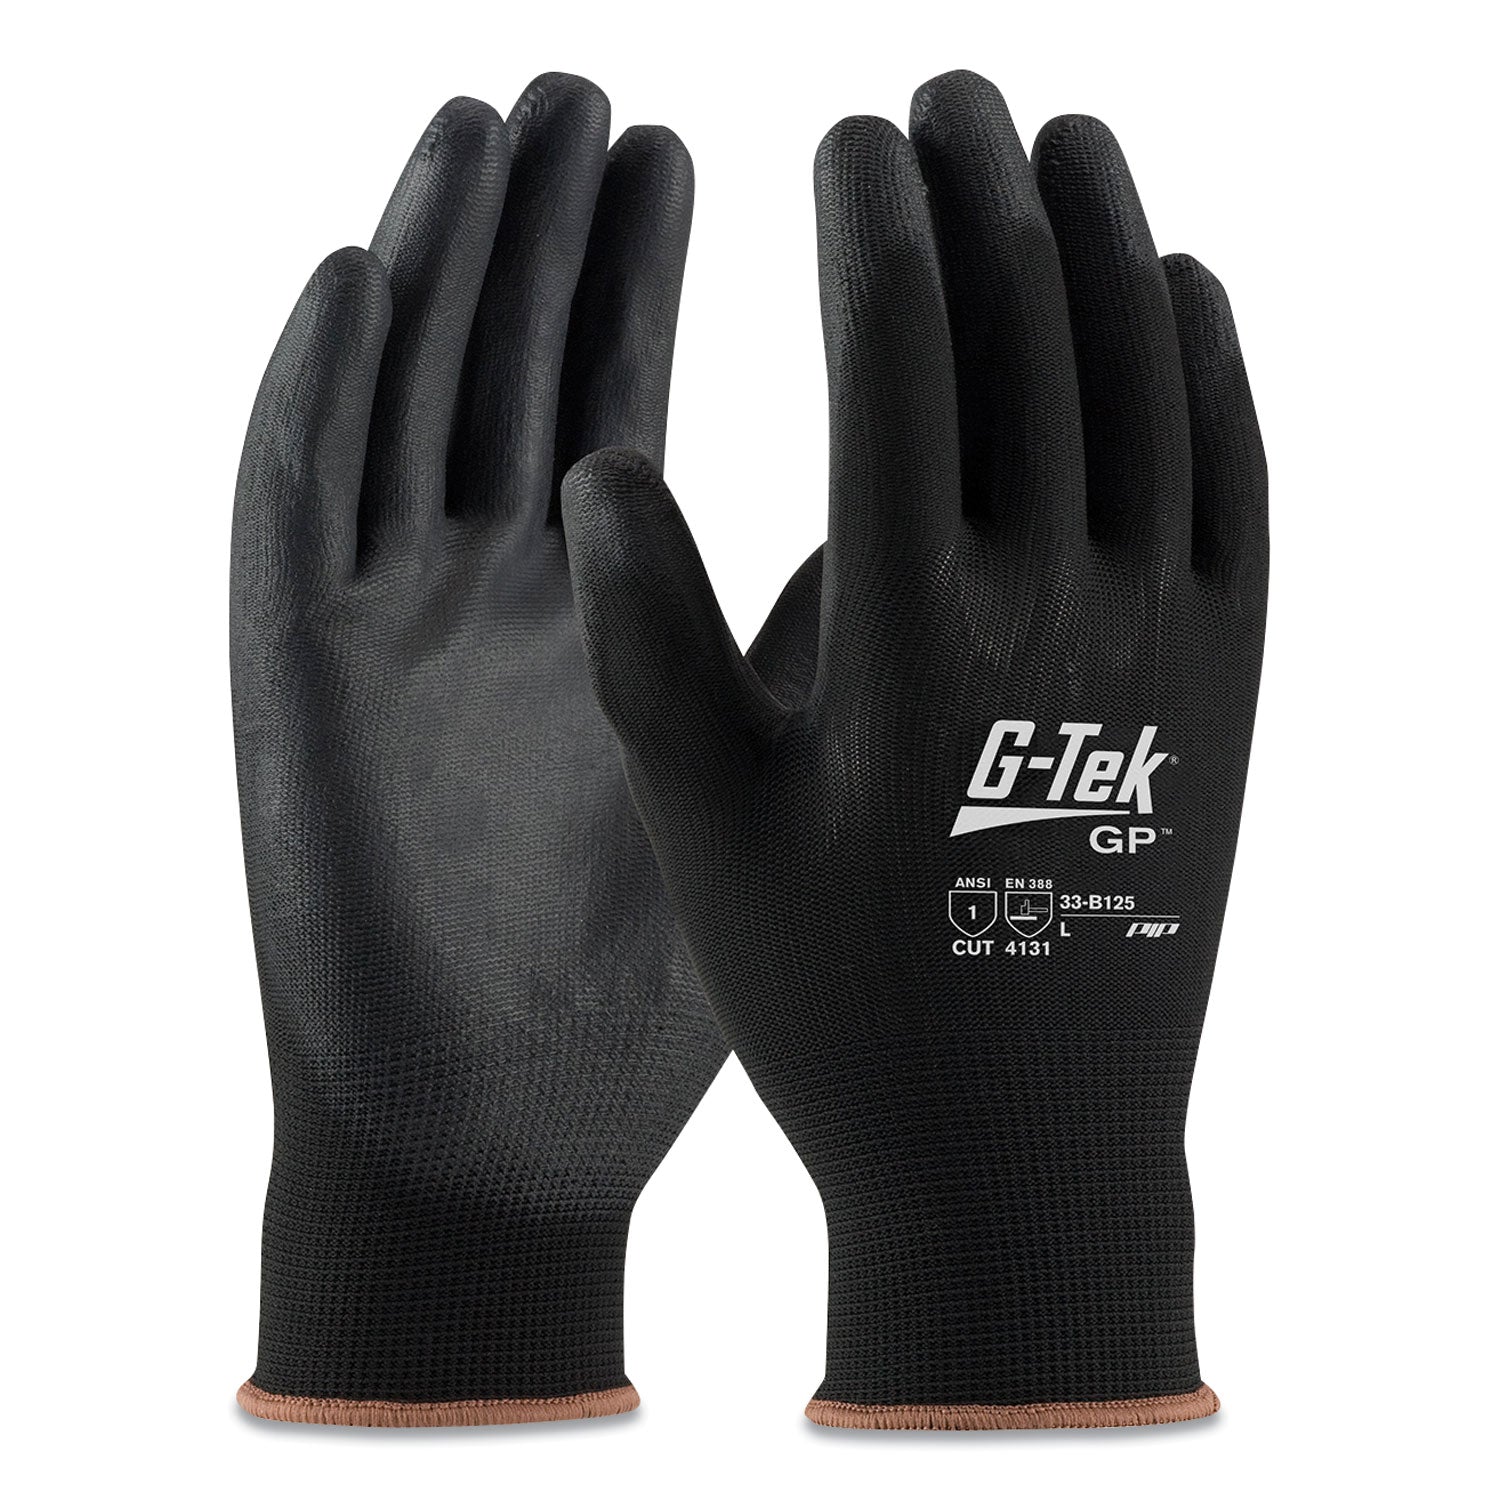 gp-polyurethane-coated-nylon-gloves-x-large-black-12-pairs_pid33b125xl - 1